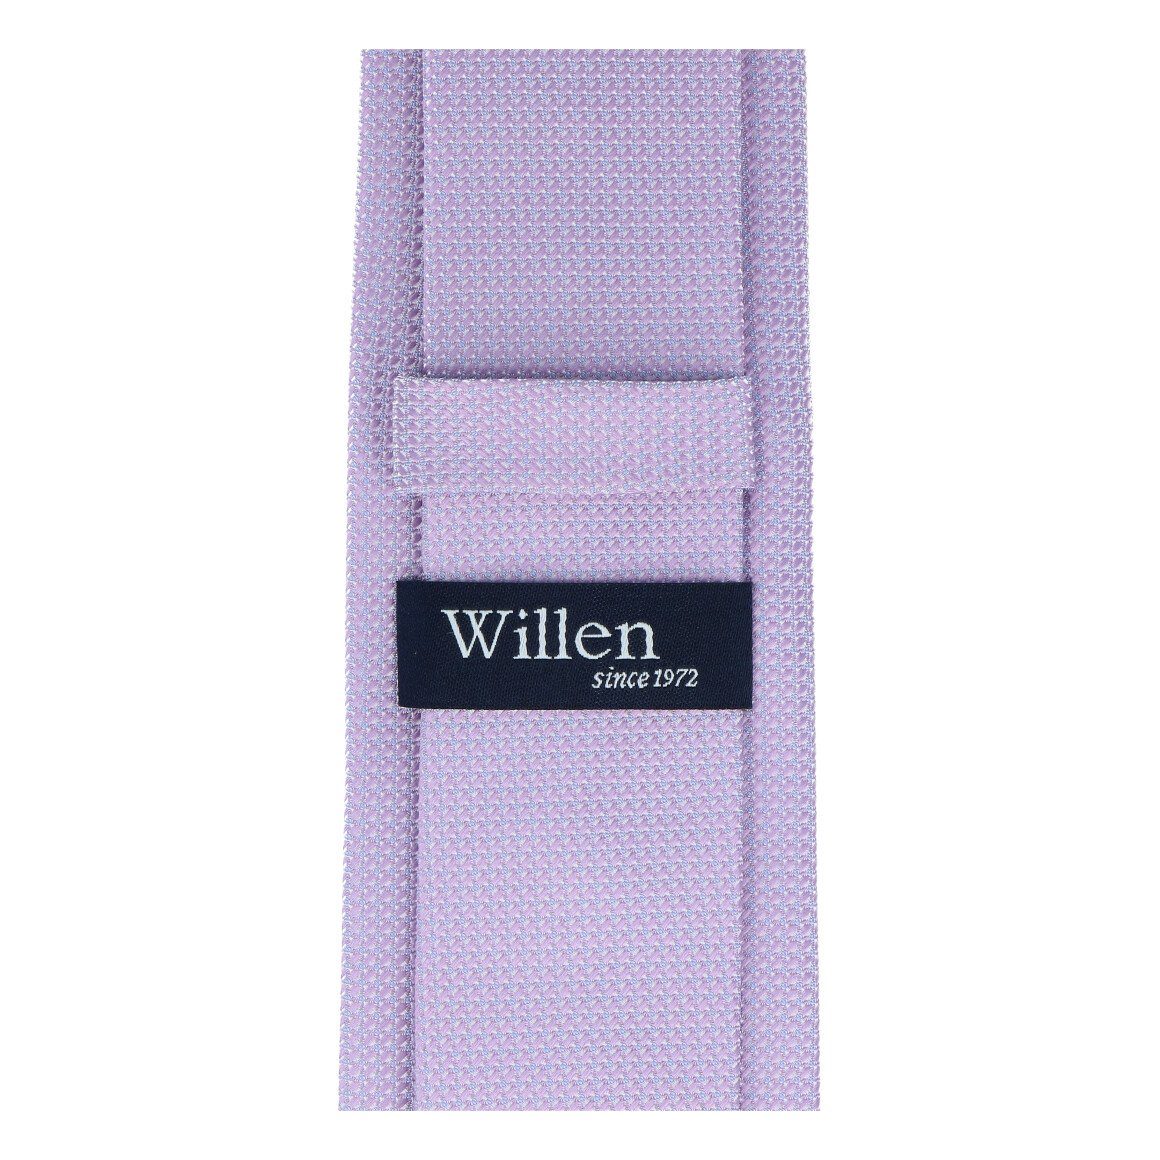 Krawatte Willen Krawatte WILLEN flieder